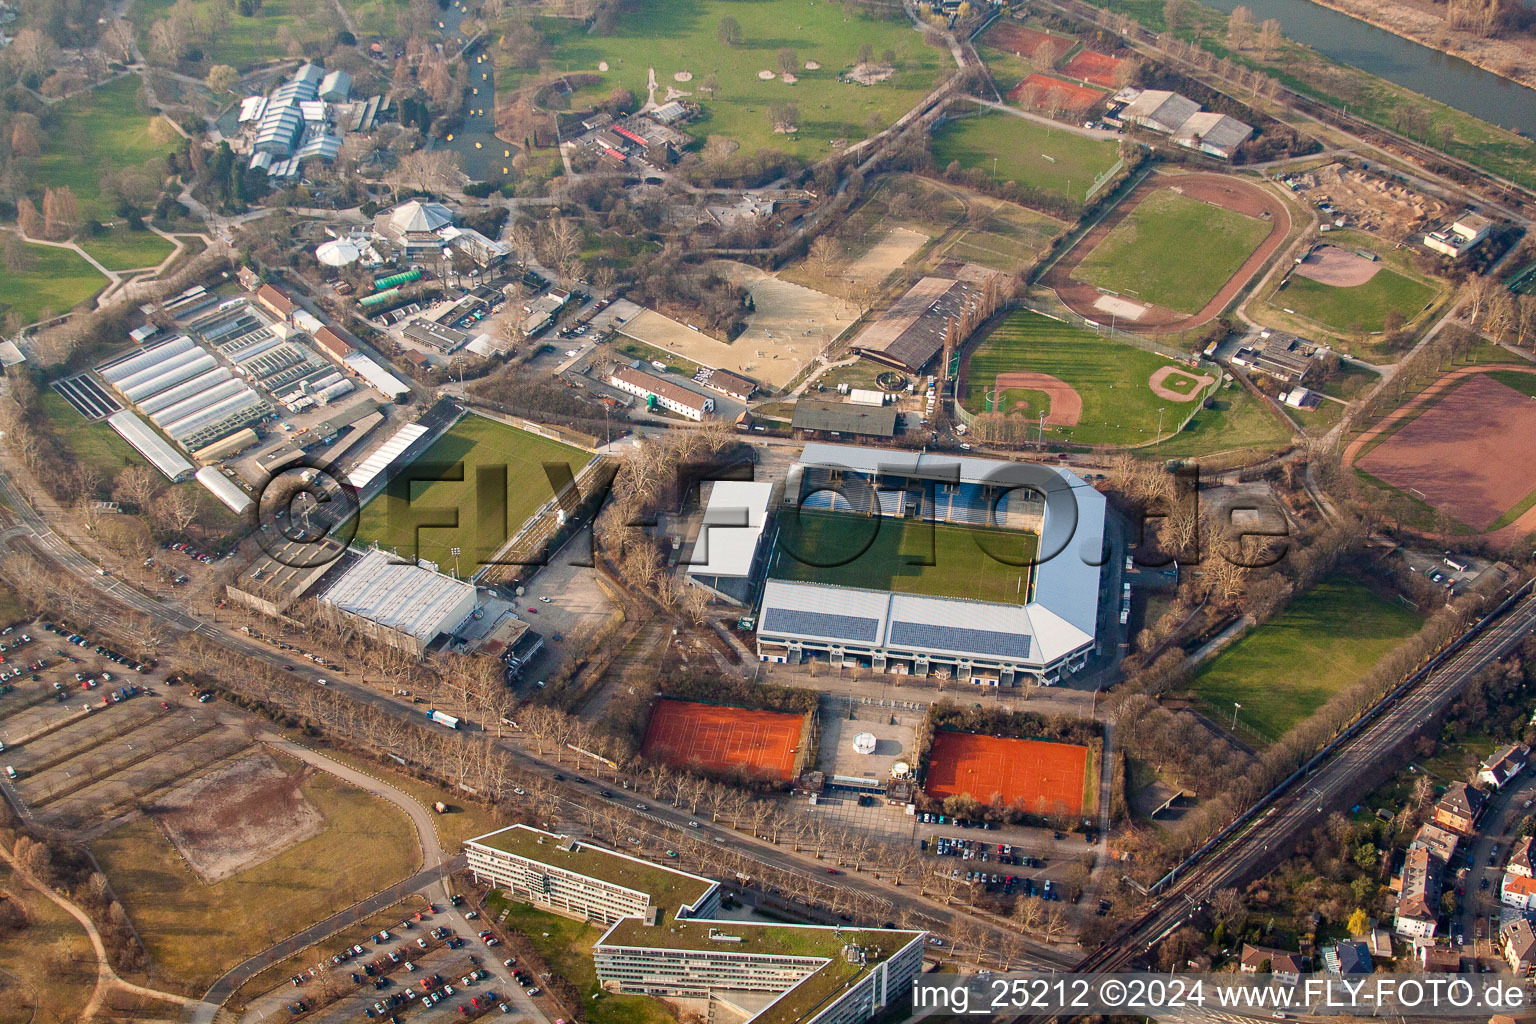 Vue aérienne de Stade Rhin-Neckar à le quartier Oststadt in Mannheim dans le département Bade-Wurtemberg, Allemagne